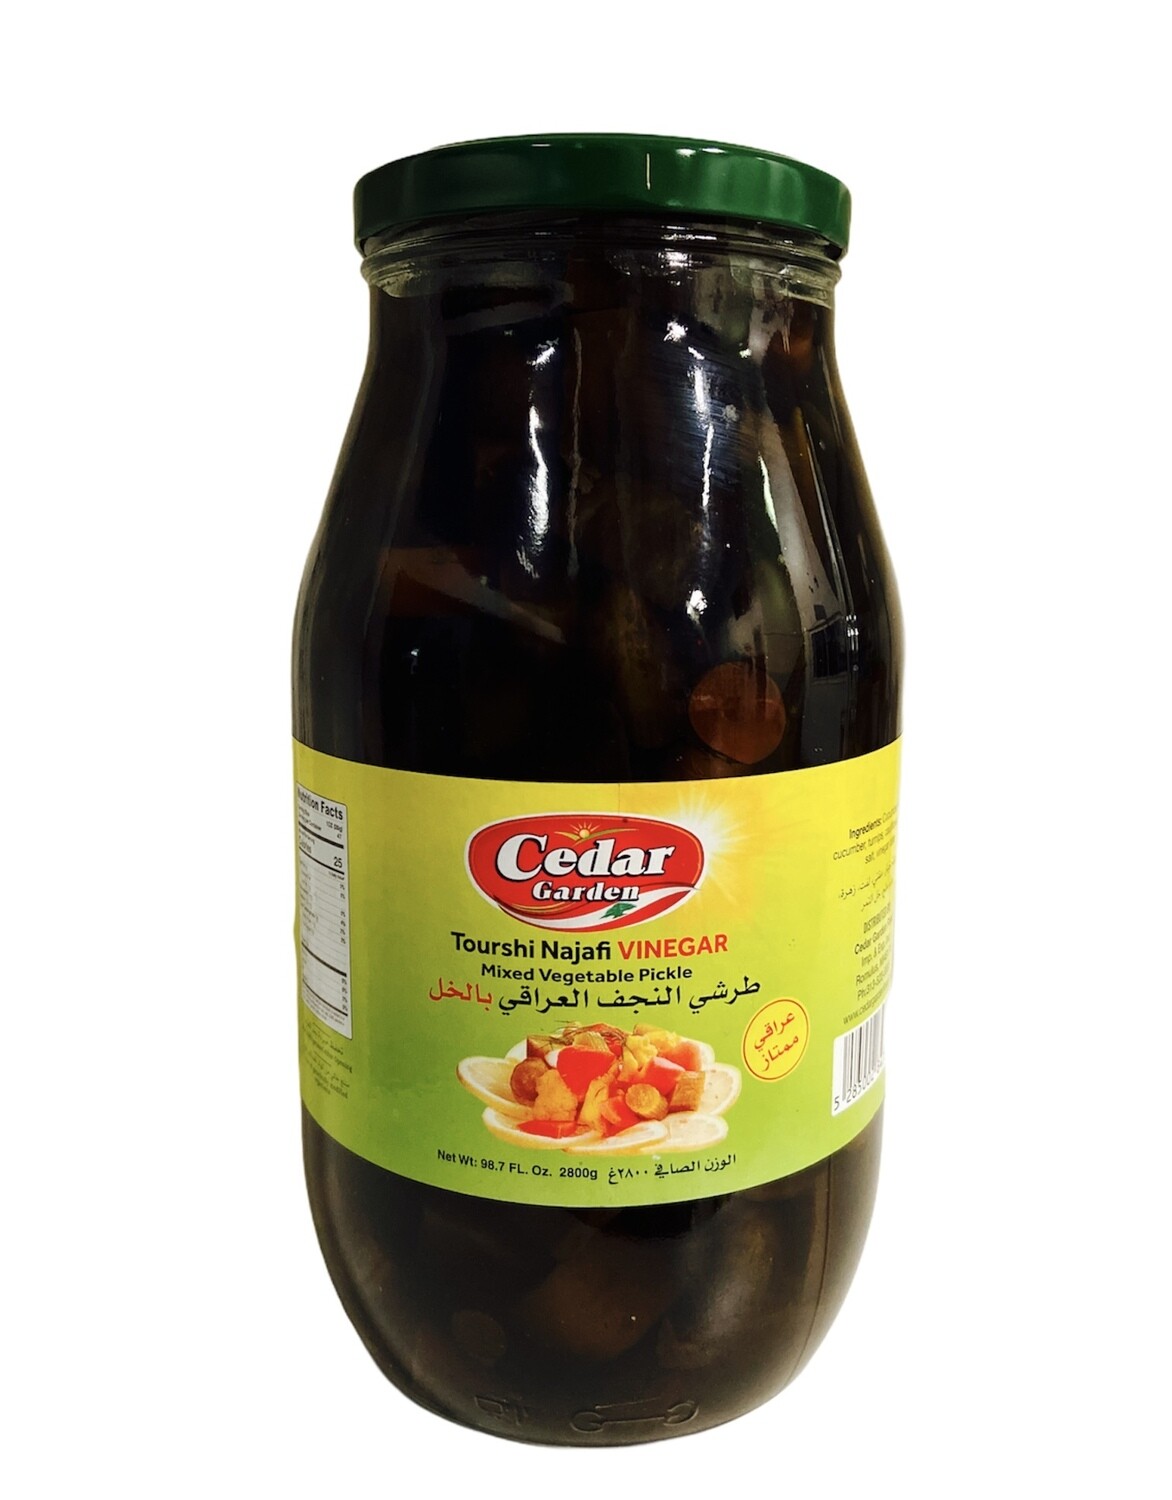 Cedar Garden Tourshi Najafi Vinegar 4x3k